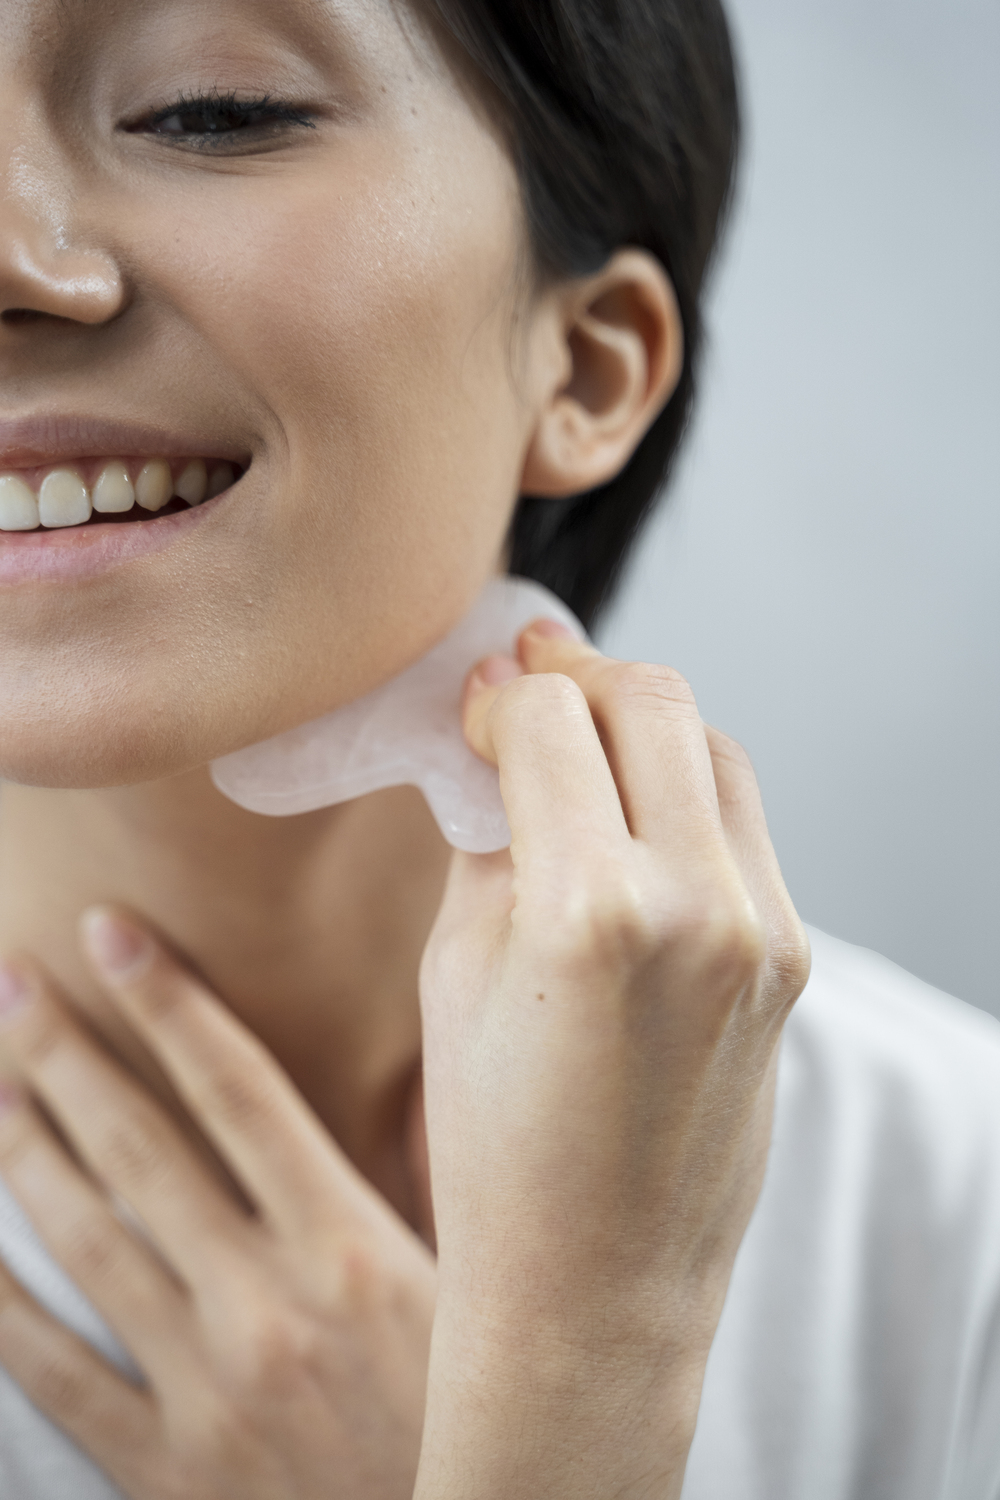 ¿Sabes todo lo que un masaje puede hacer en tu rostro?